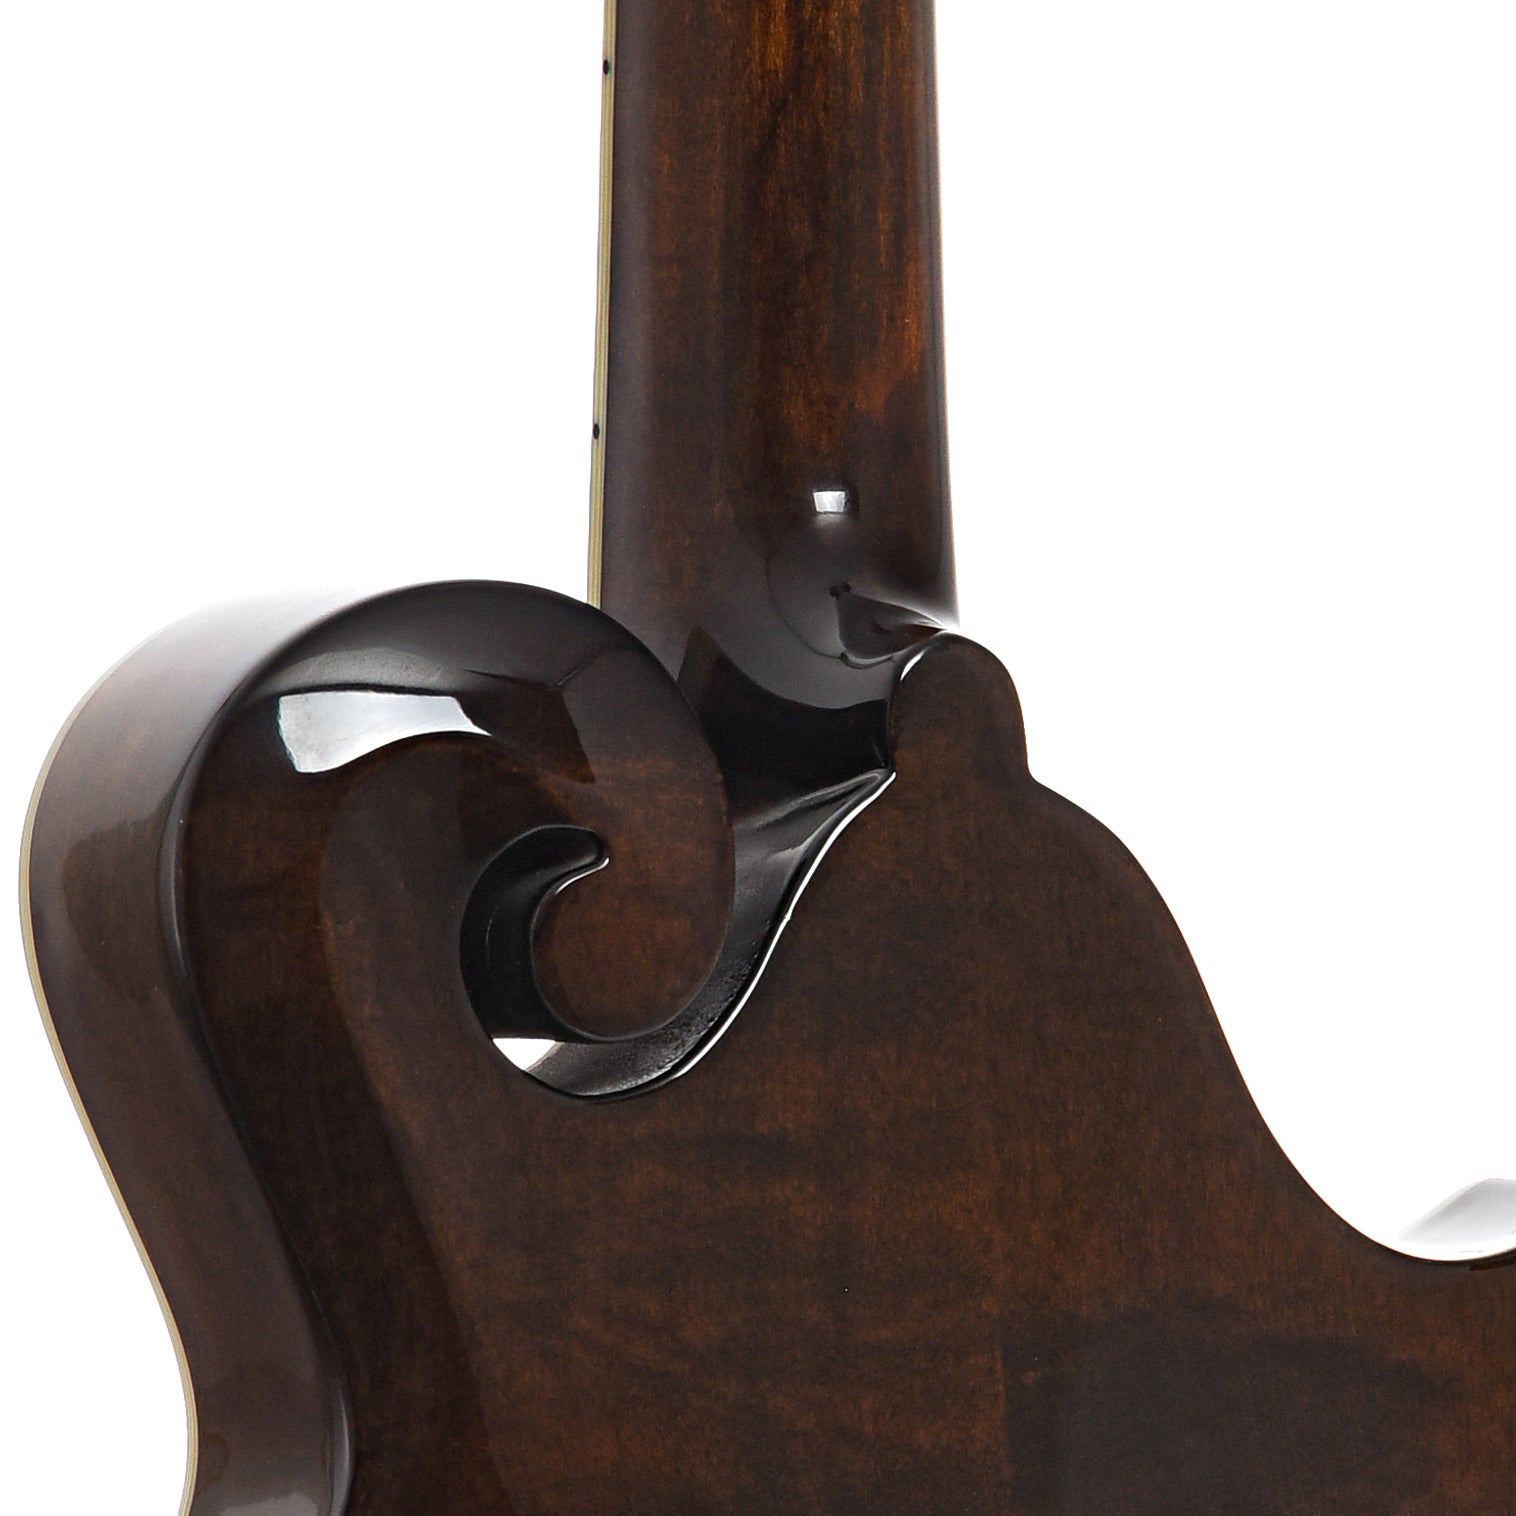 Heel of Eastman MD515 Classic Mandolin